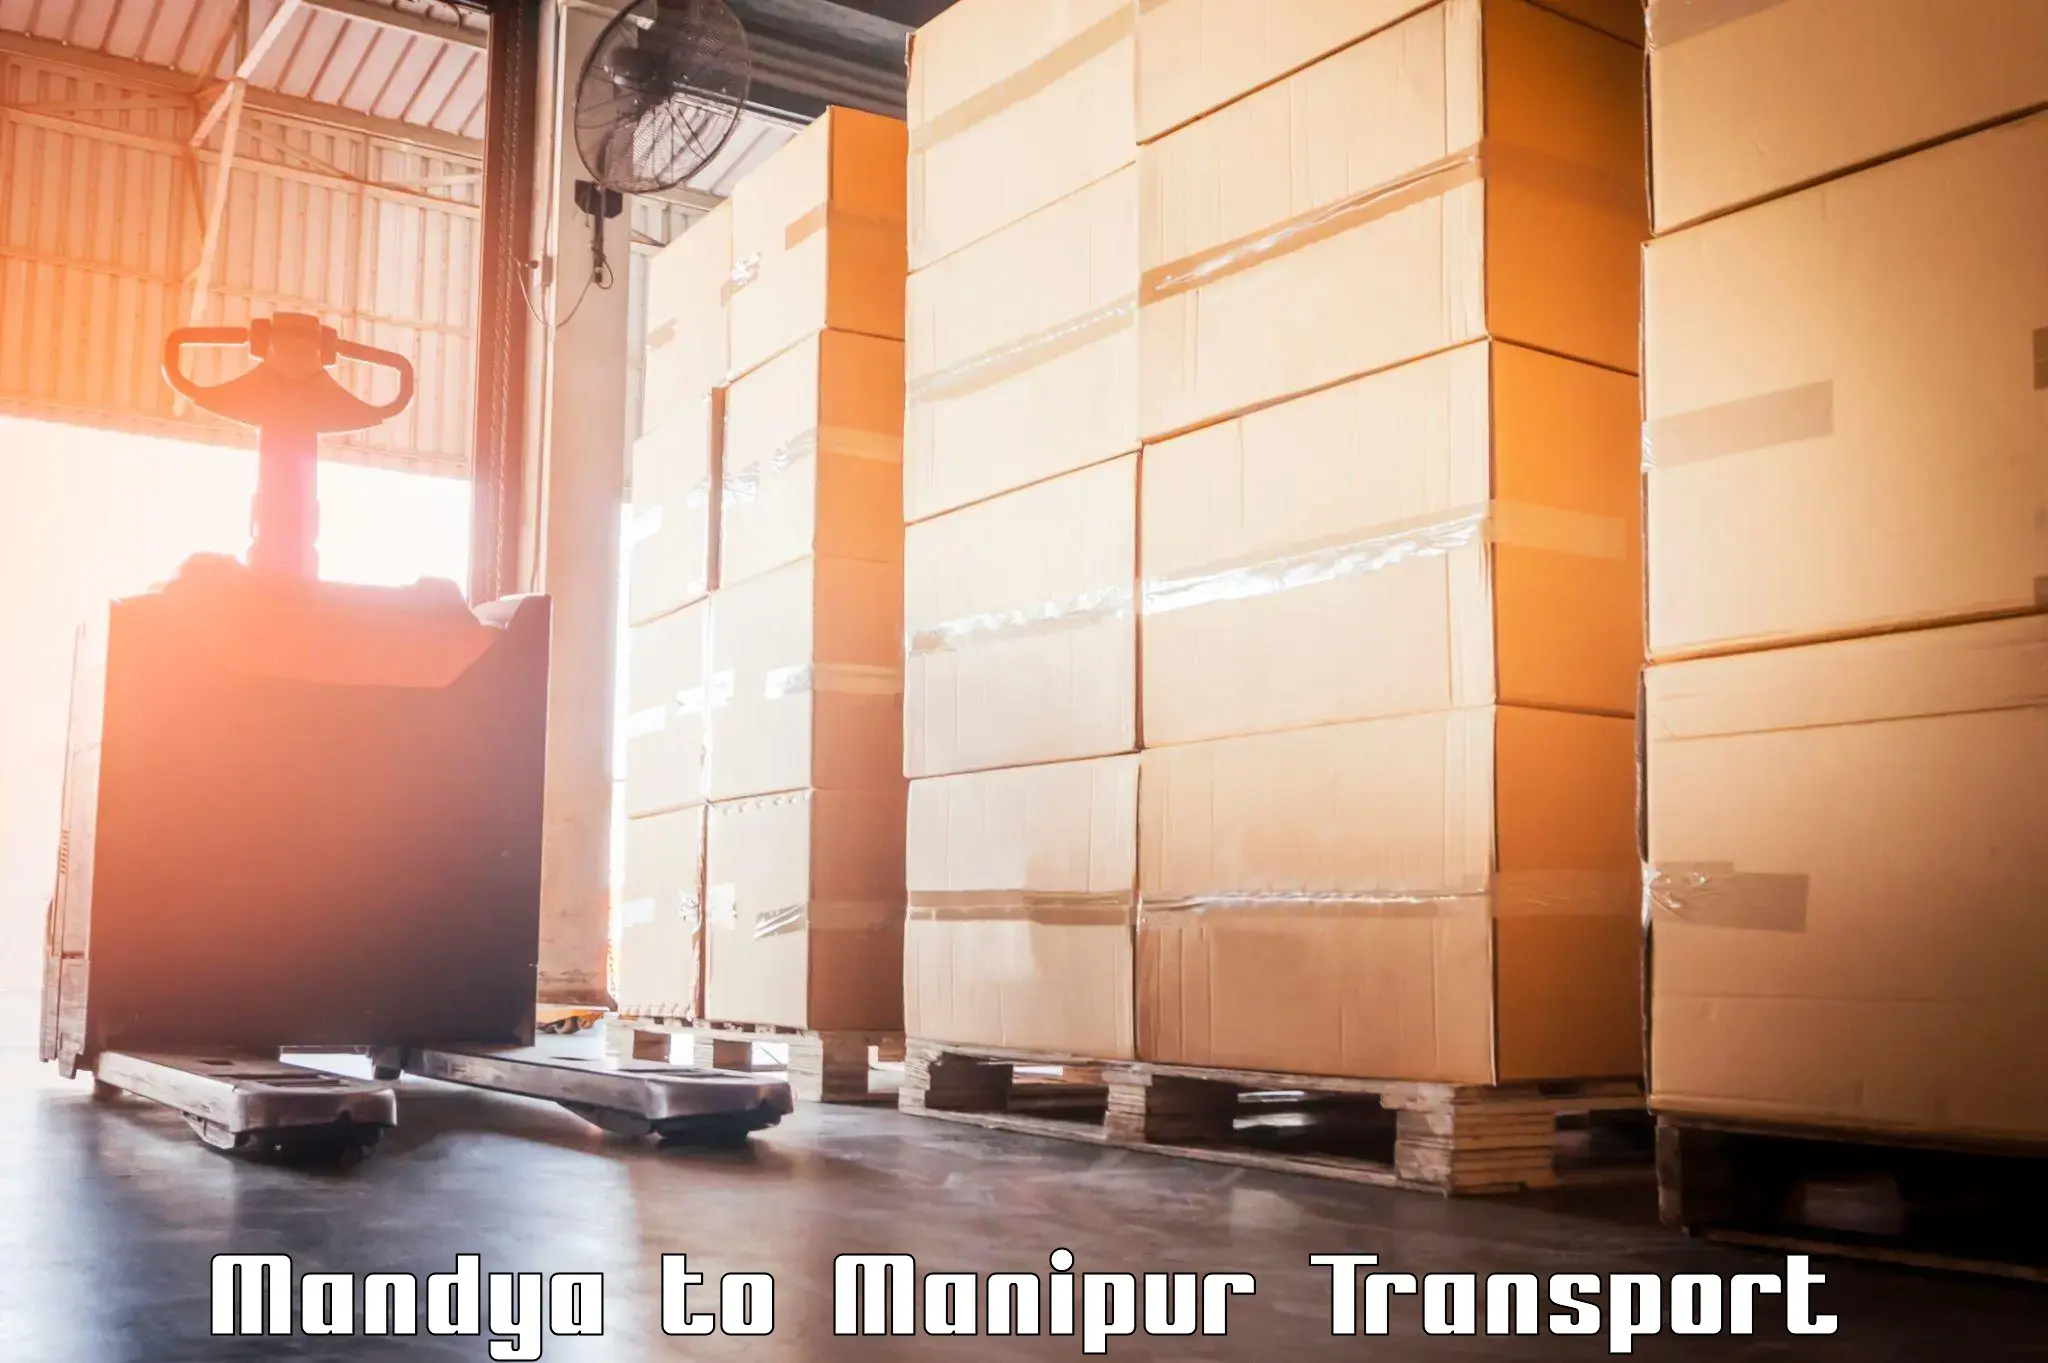 Cargo train transport services Mandya to Churachandpur